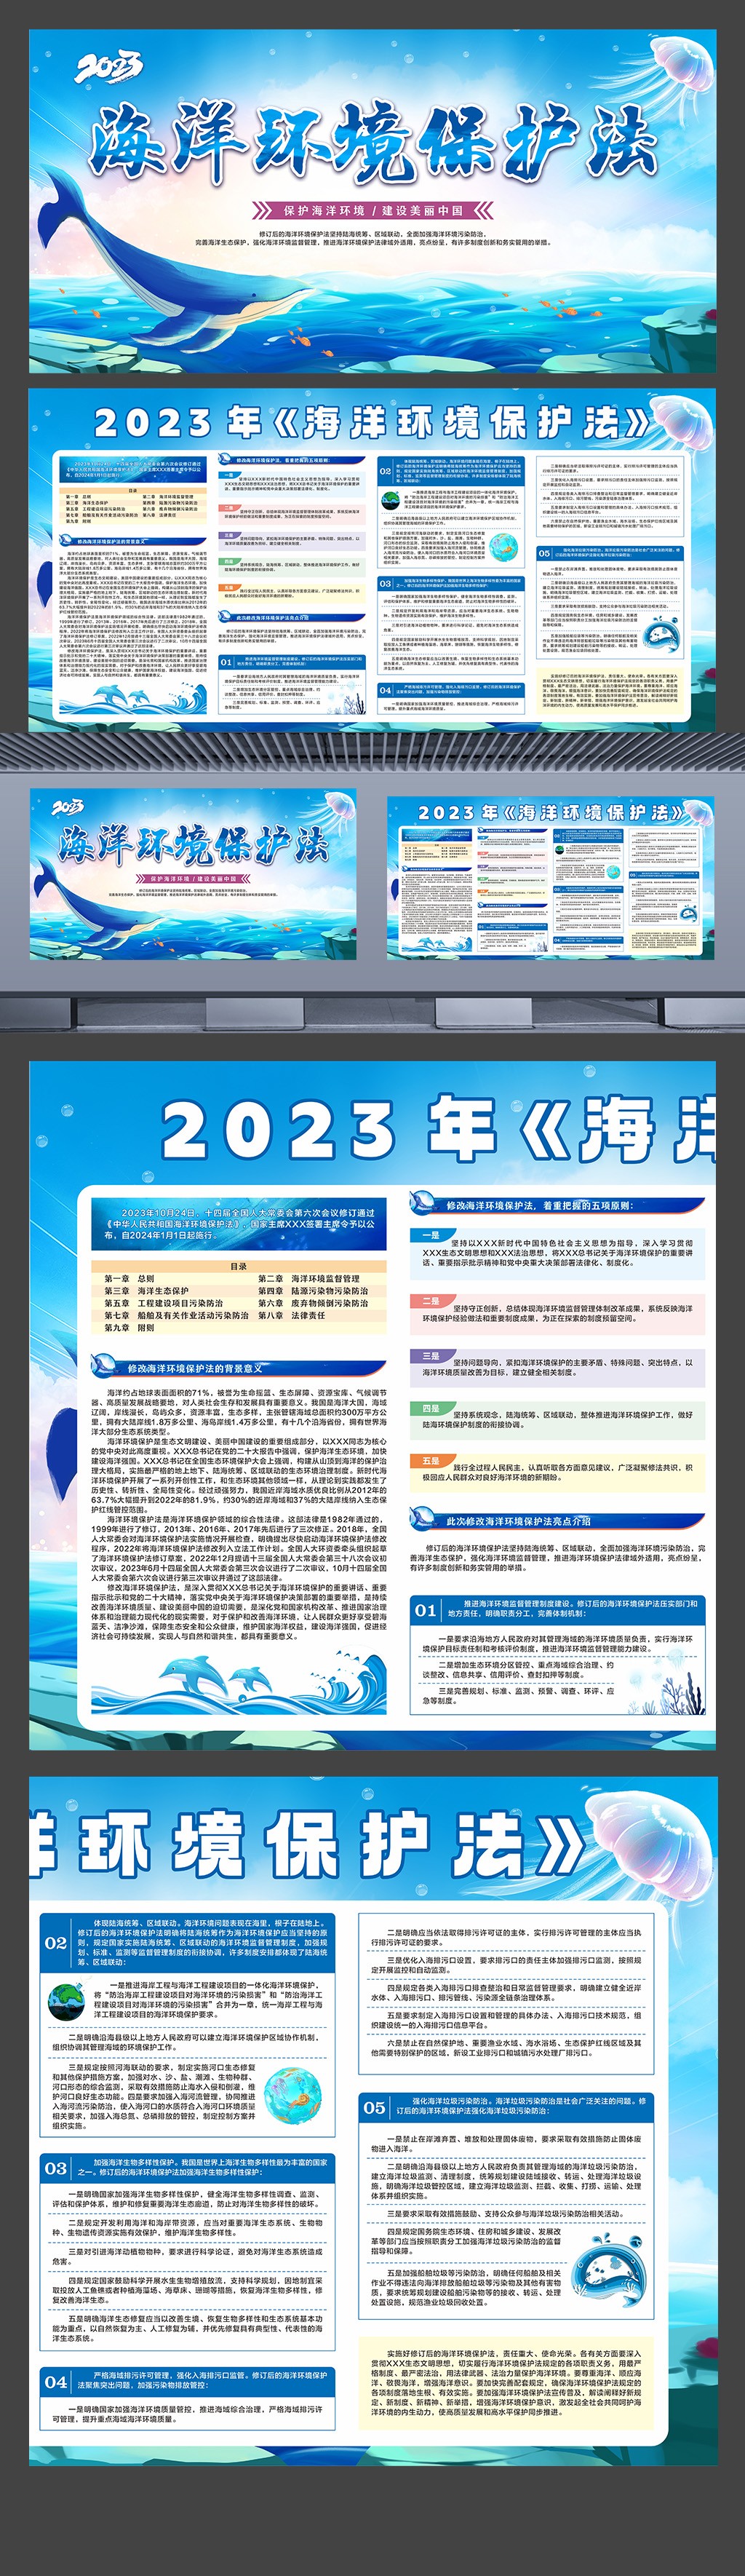 2023年海洋环境保护法橱窗展板设计下载